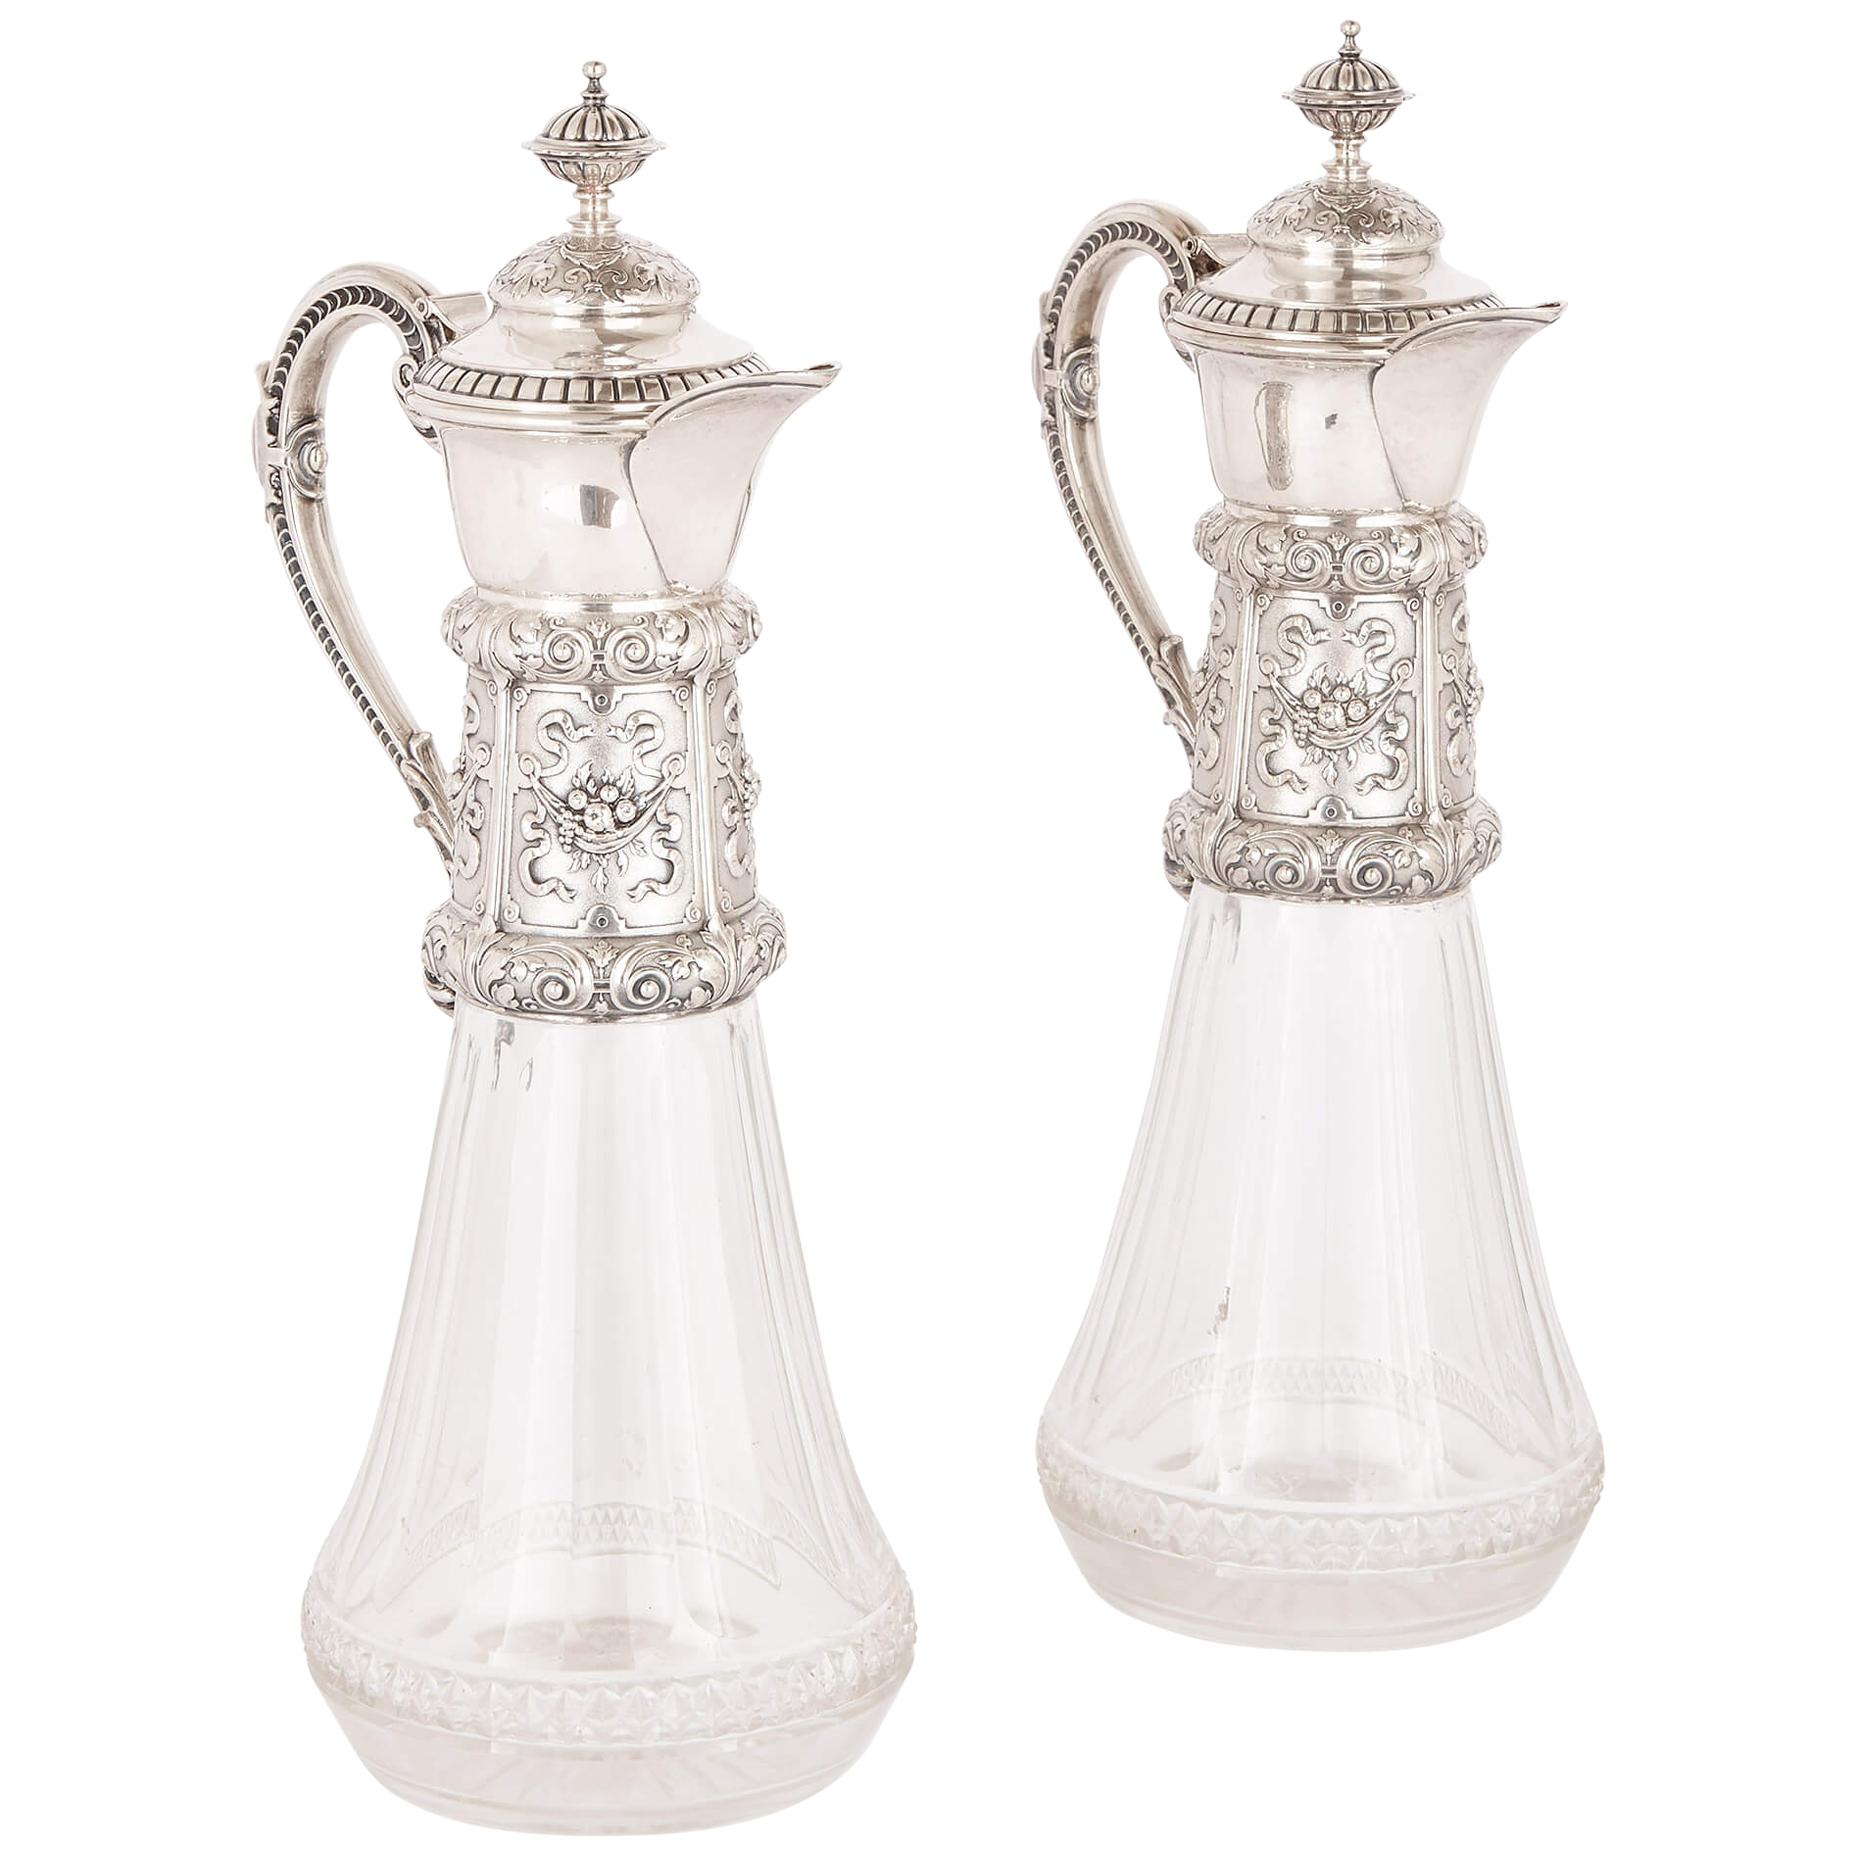 Dos jarras de vidrio tallado y clarete de plata, S. XIX